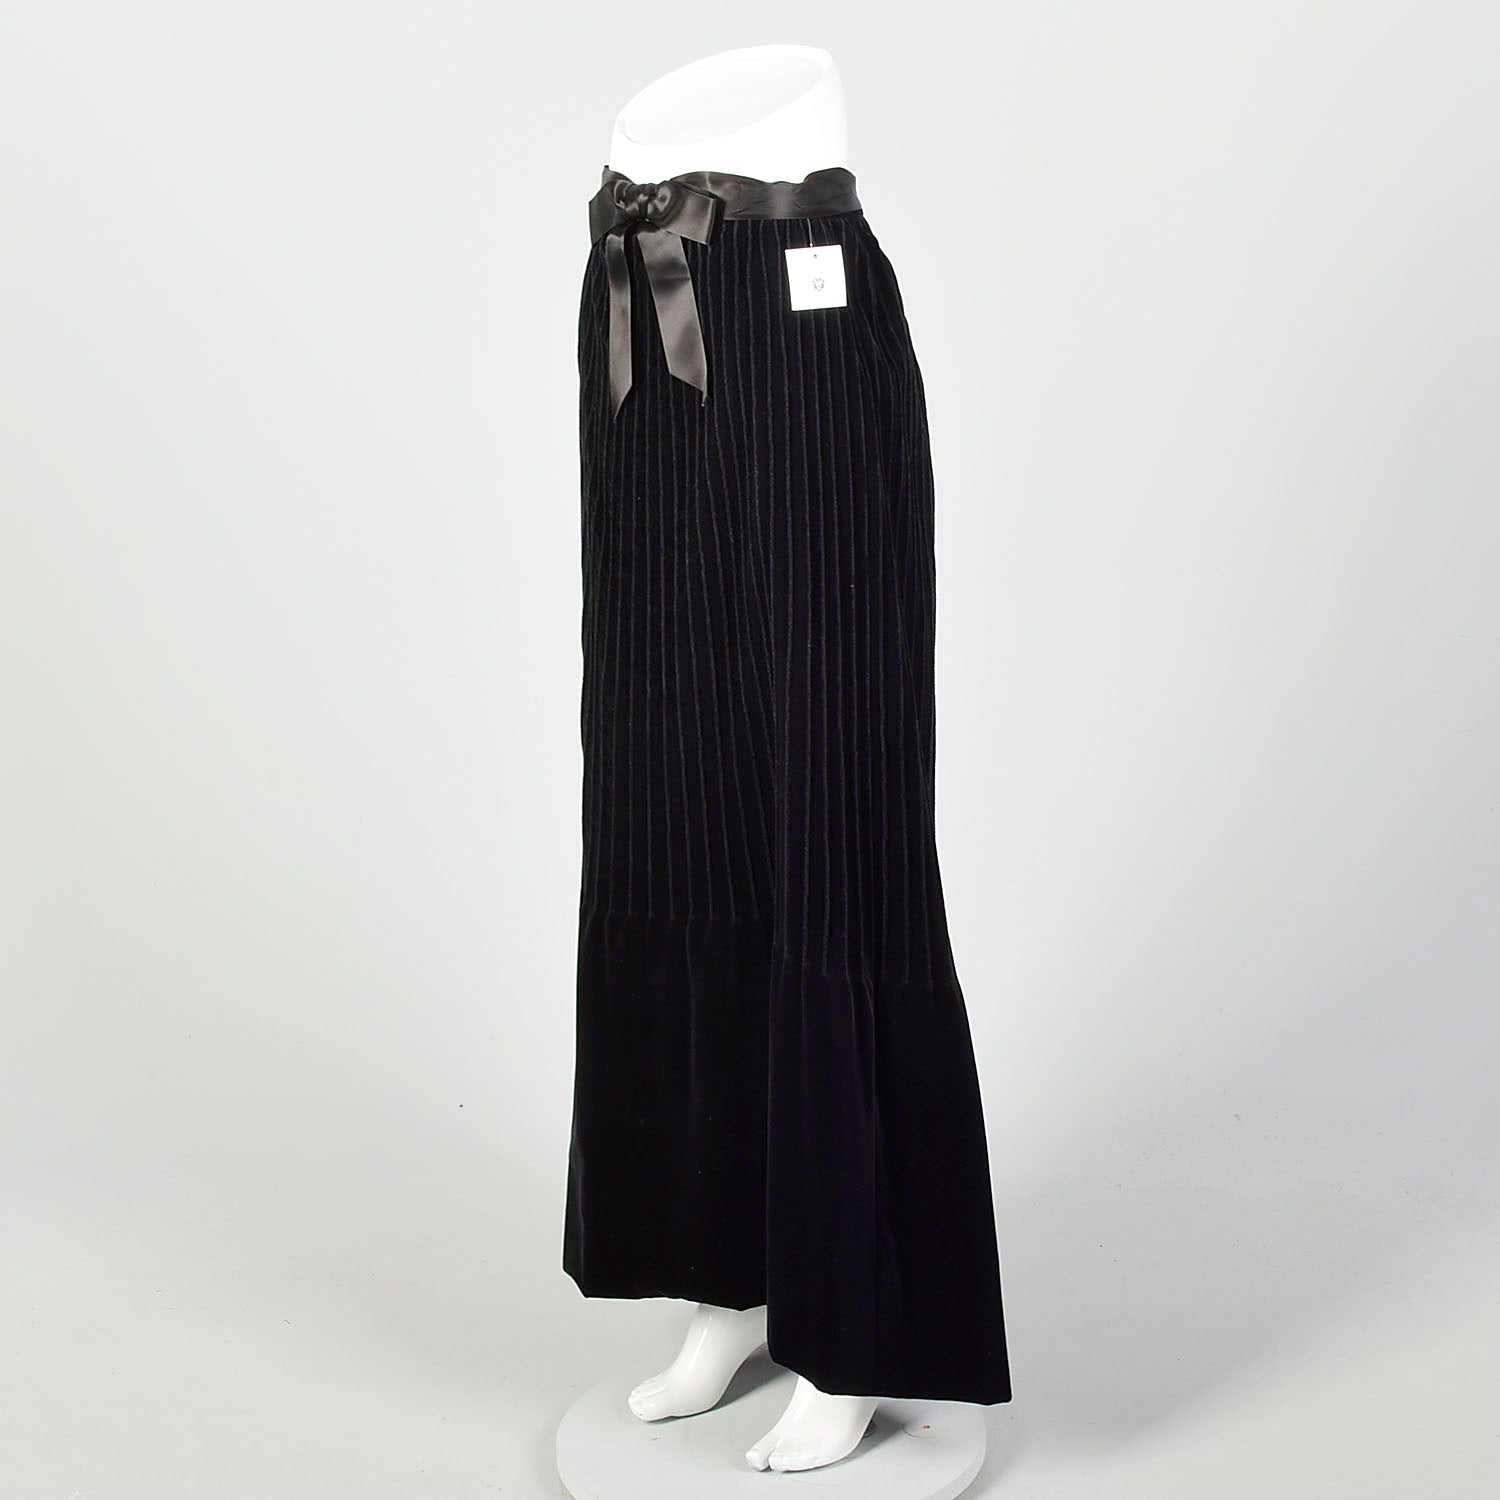 Small 1970s Black Skirt Velvet Formal Evening Maxi